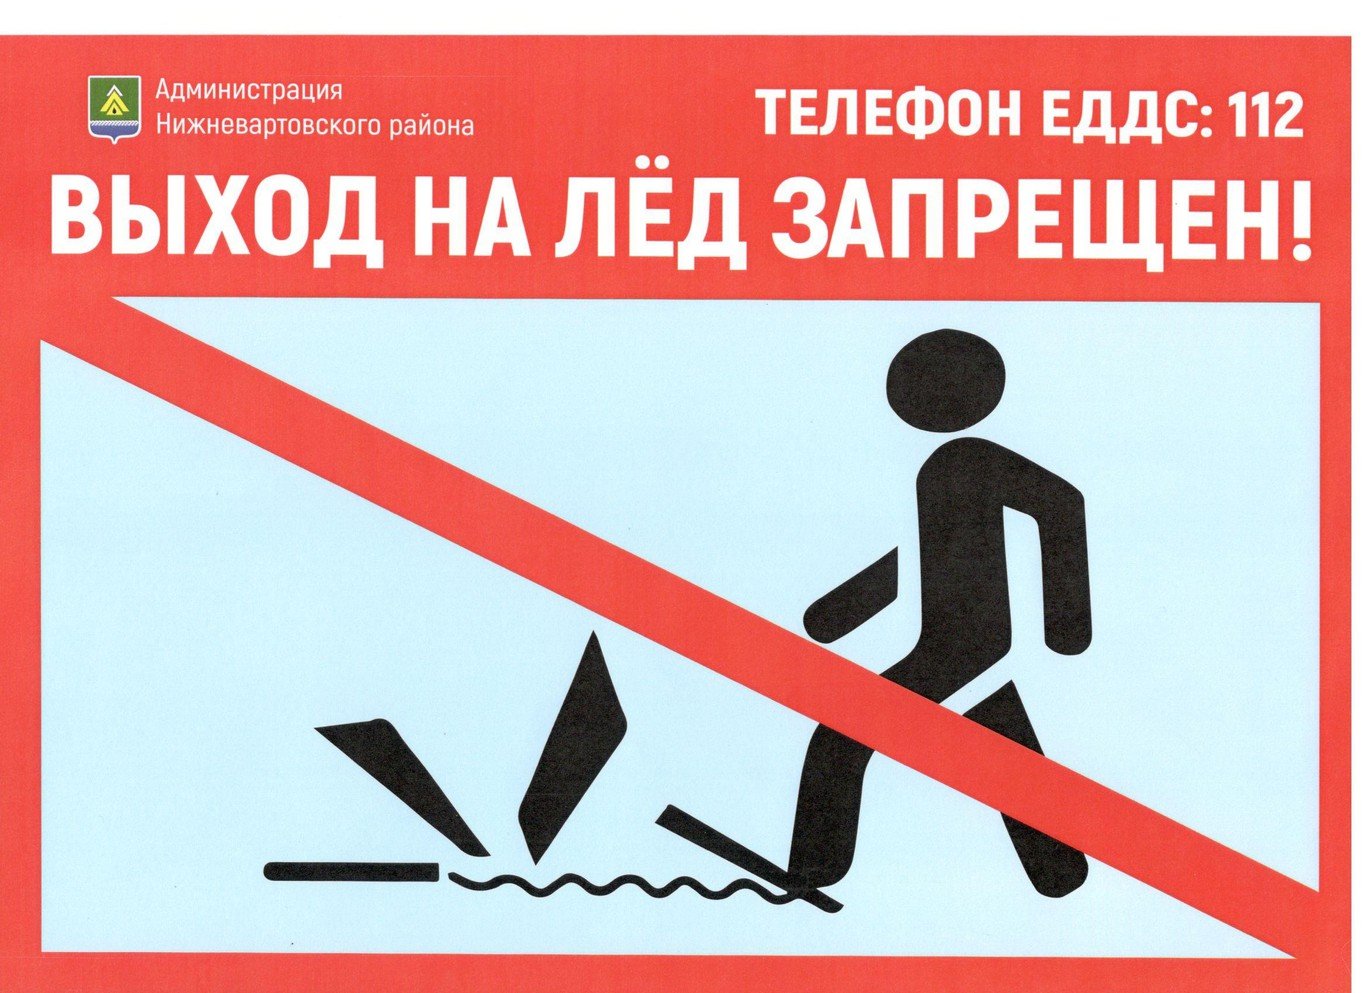 Запрет 2 примера. Выход на лед запрещен. Выход на лед запрещен табличка. Выход га лед запрещён. Таблички о запрете выхода на лед.